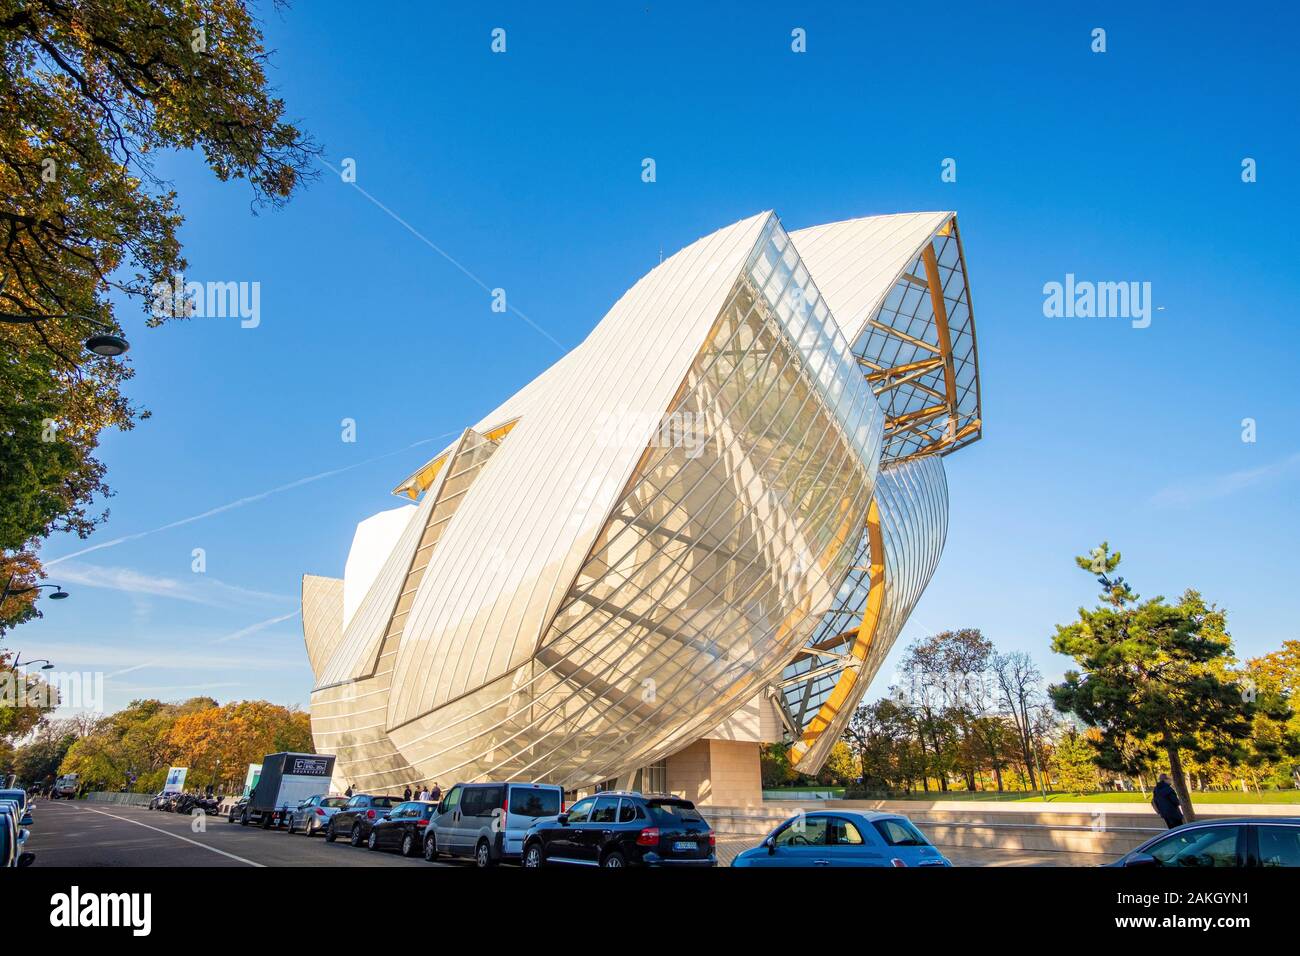 France, Paris, Bois de Boulogne, The Louis Vuitton Foundation by architect Frank Gehry Stock Photo